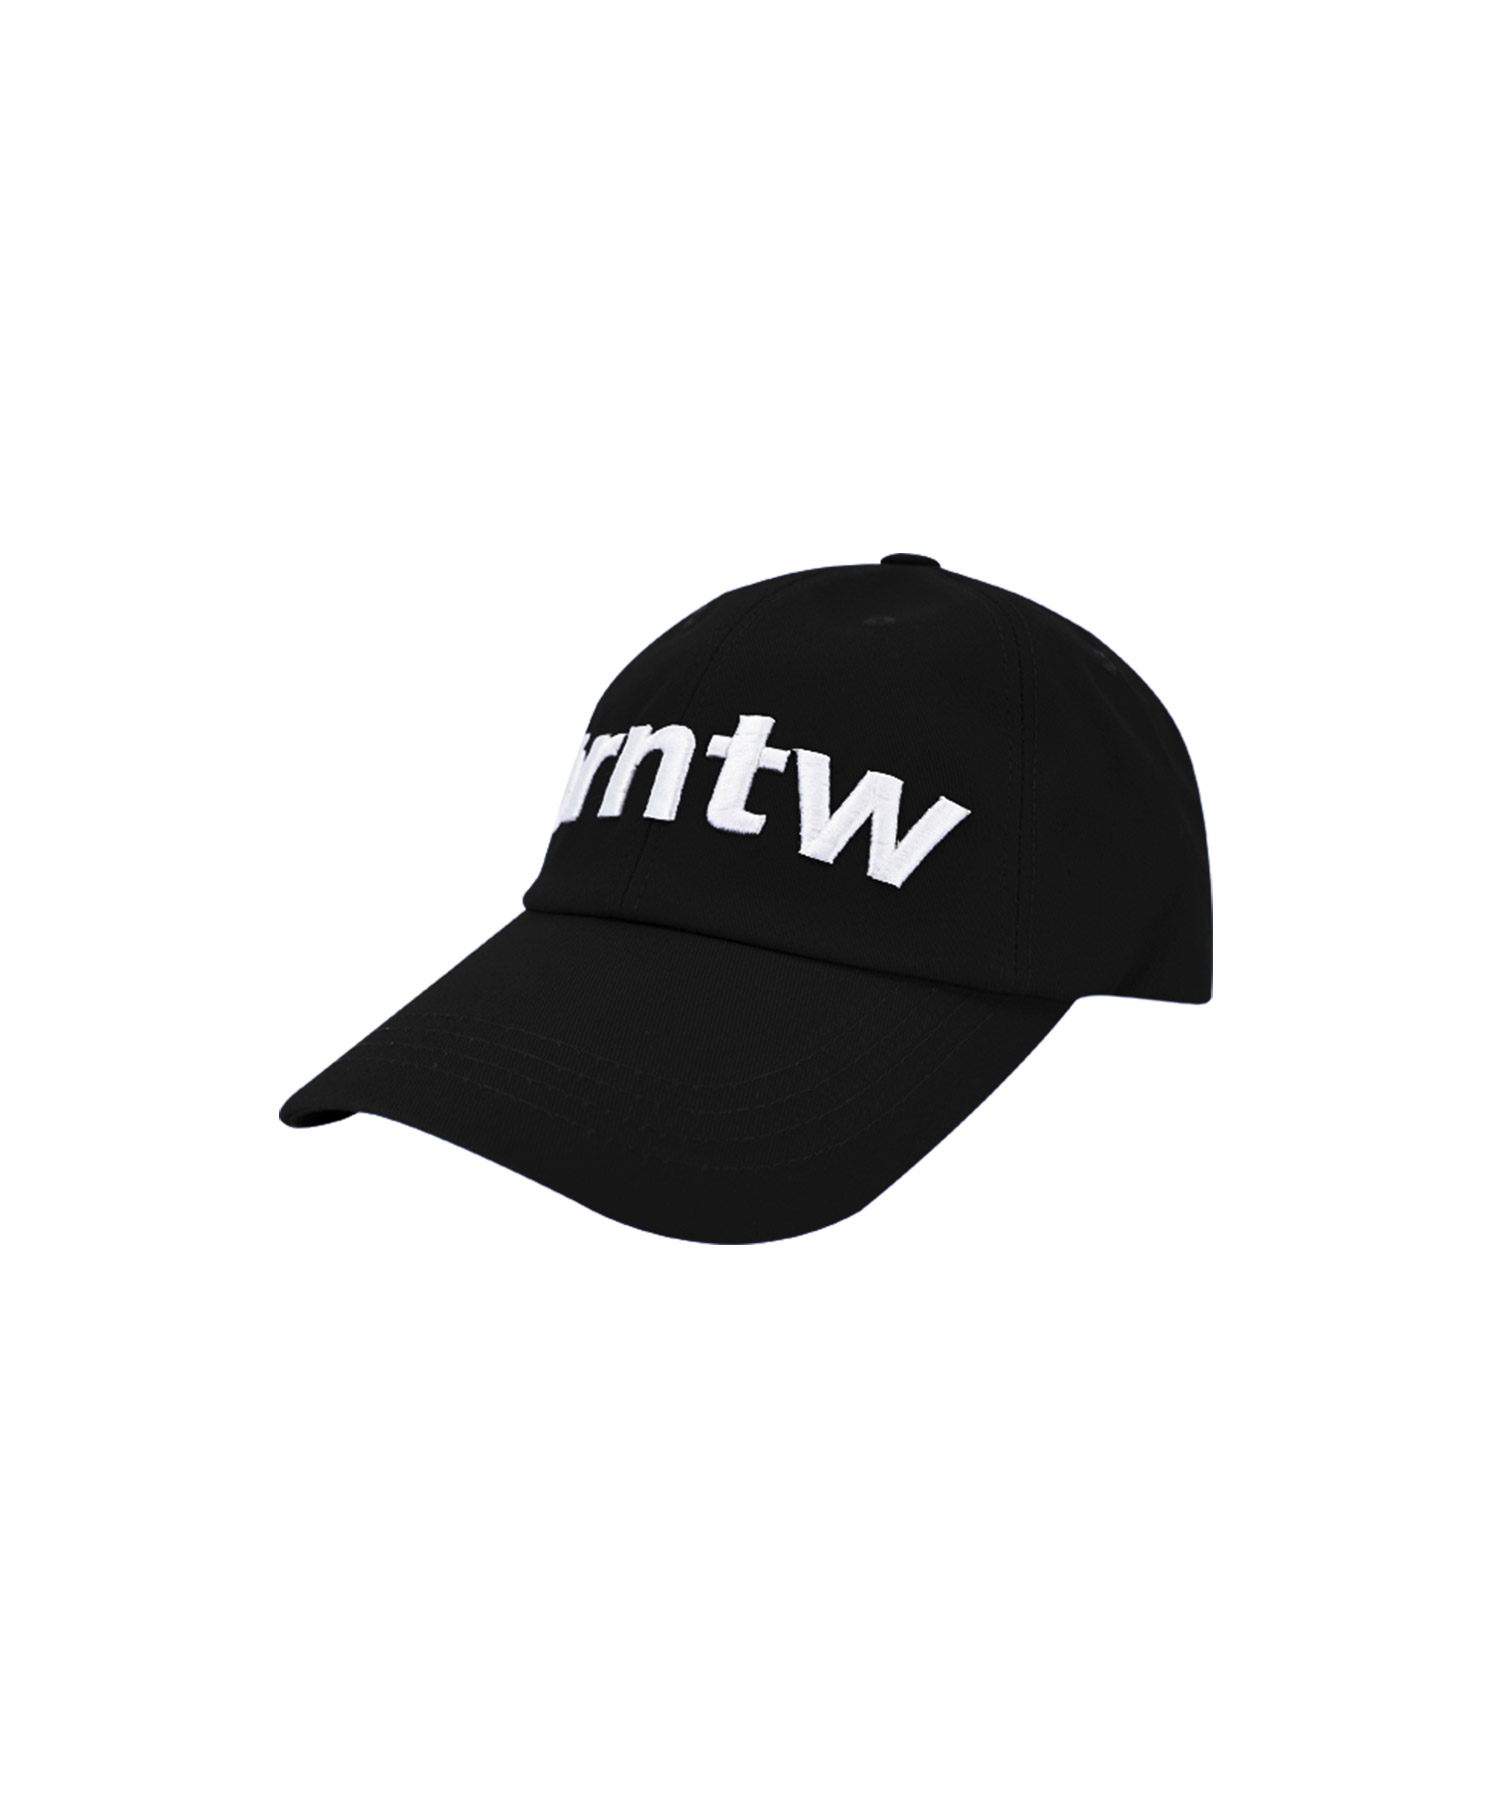 BRNTW CAP [BLACK]